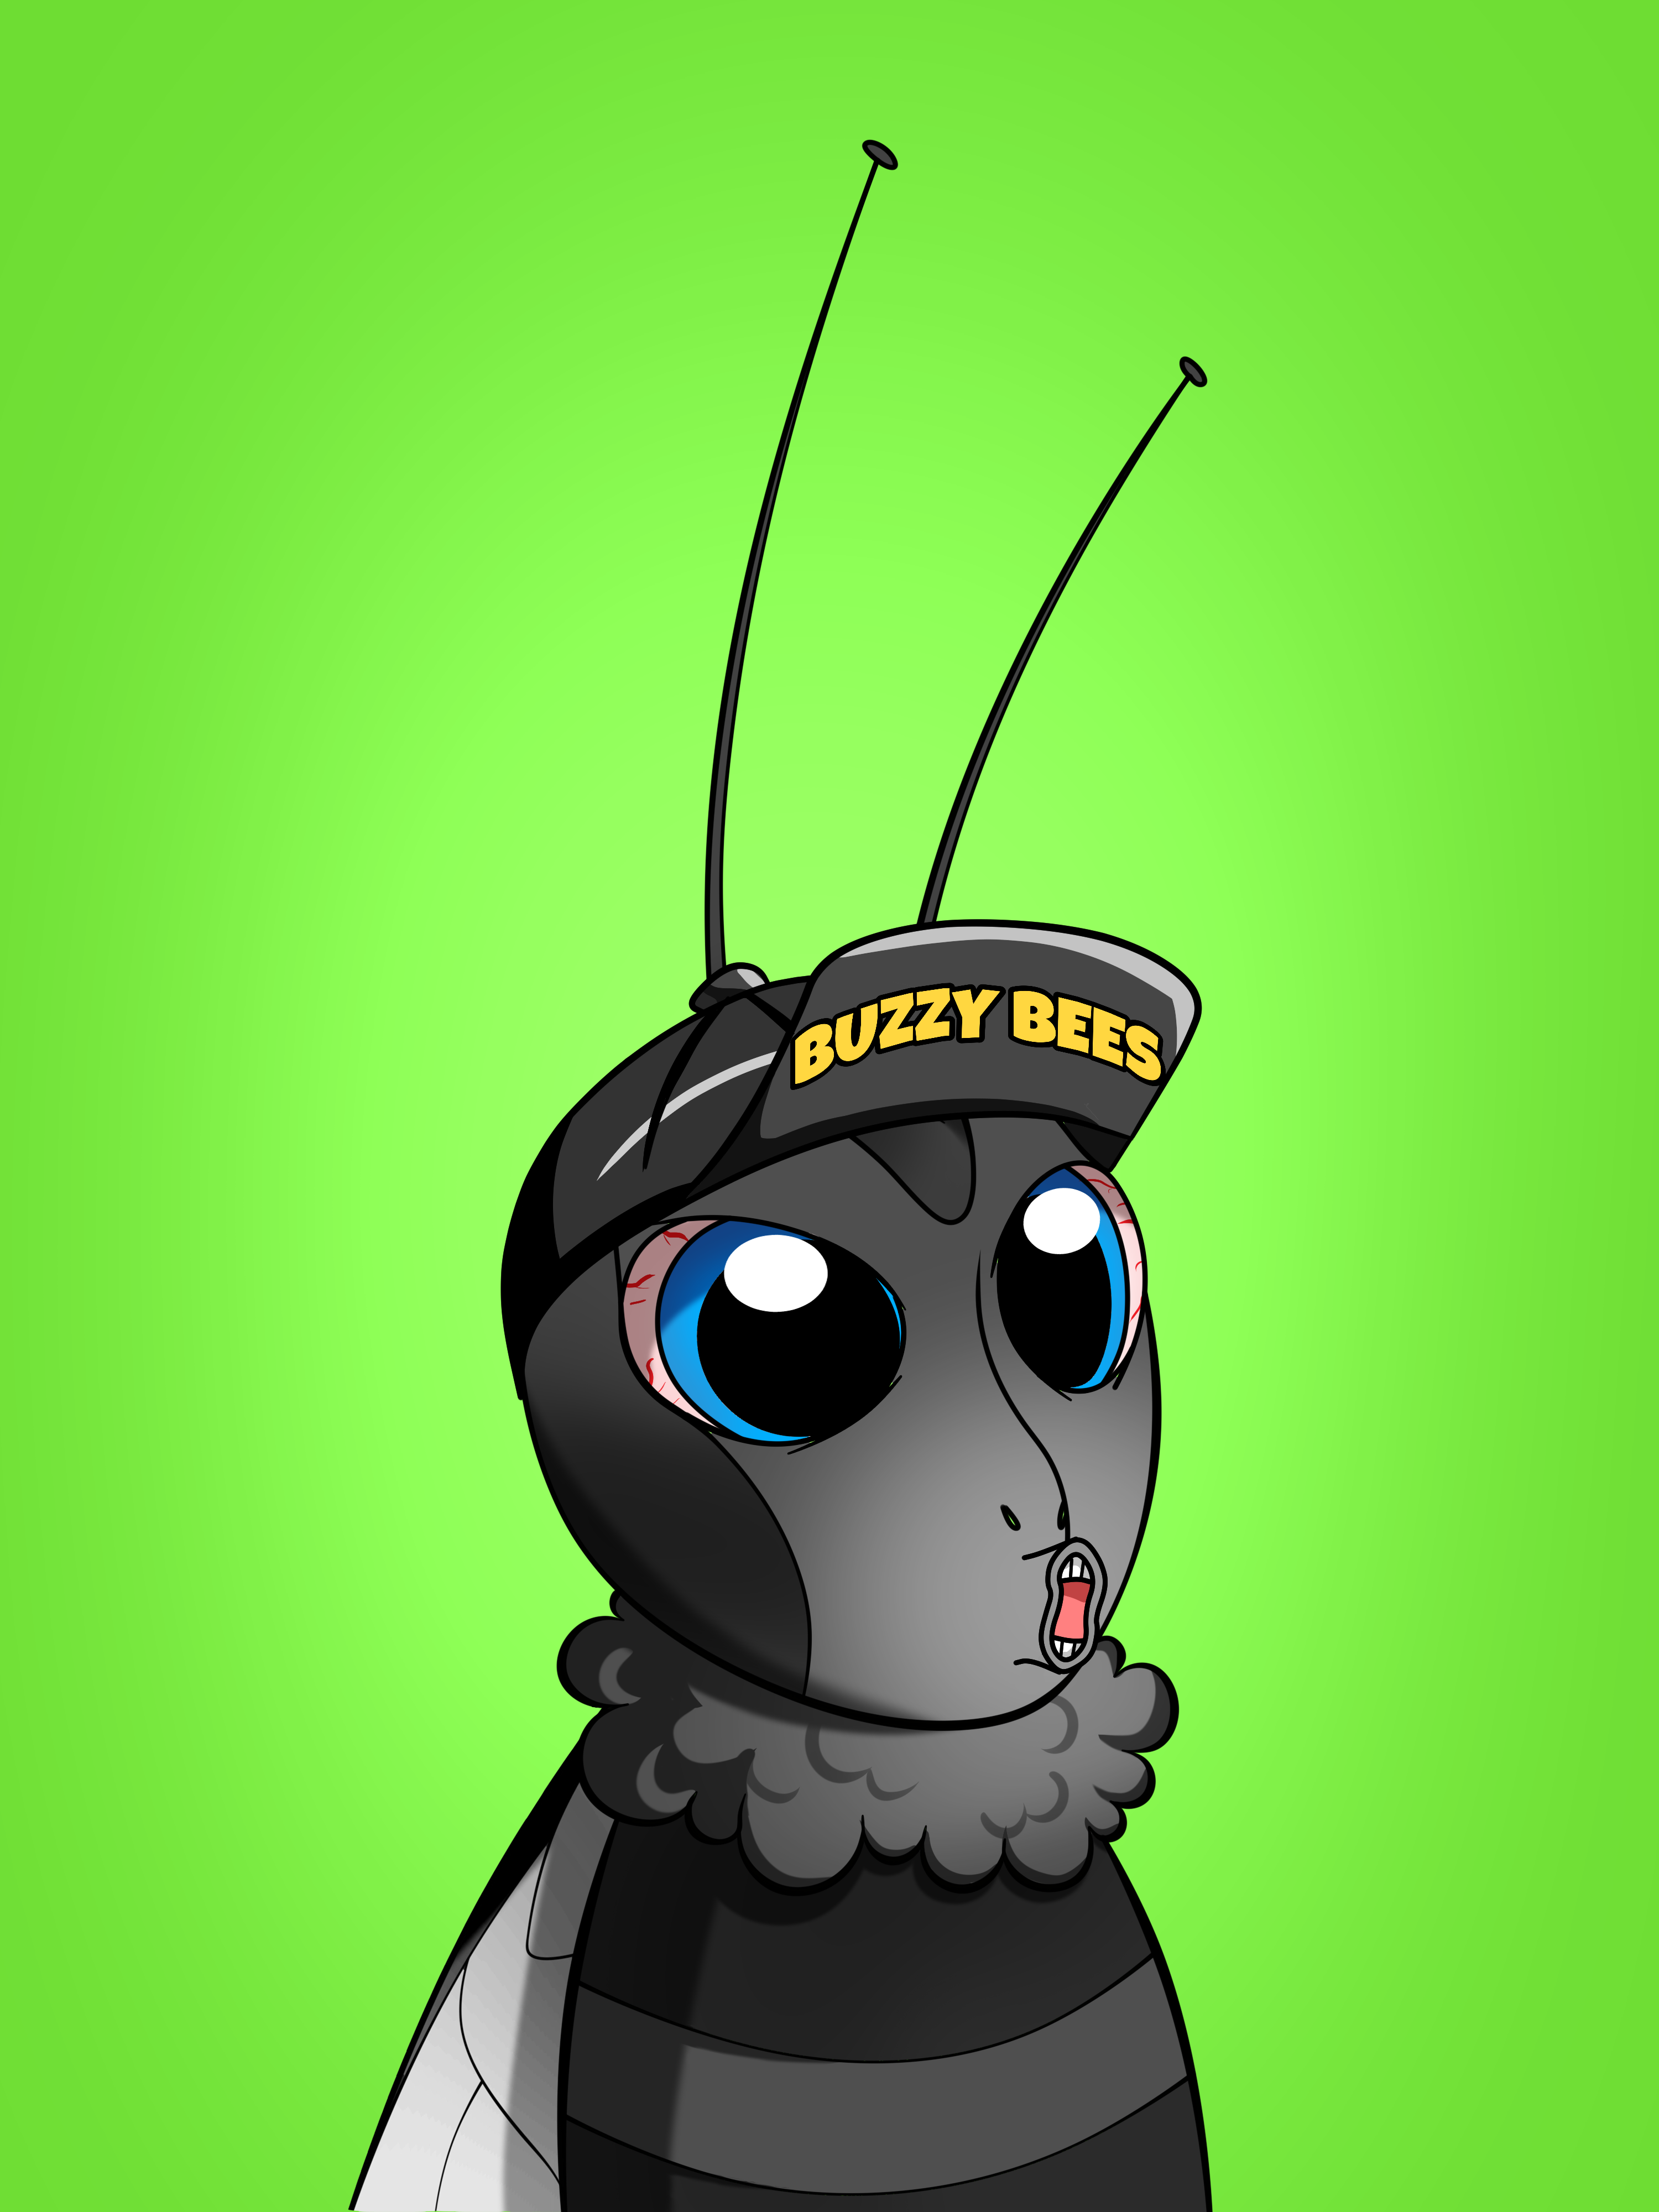 Buzzy Bees 267